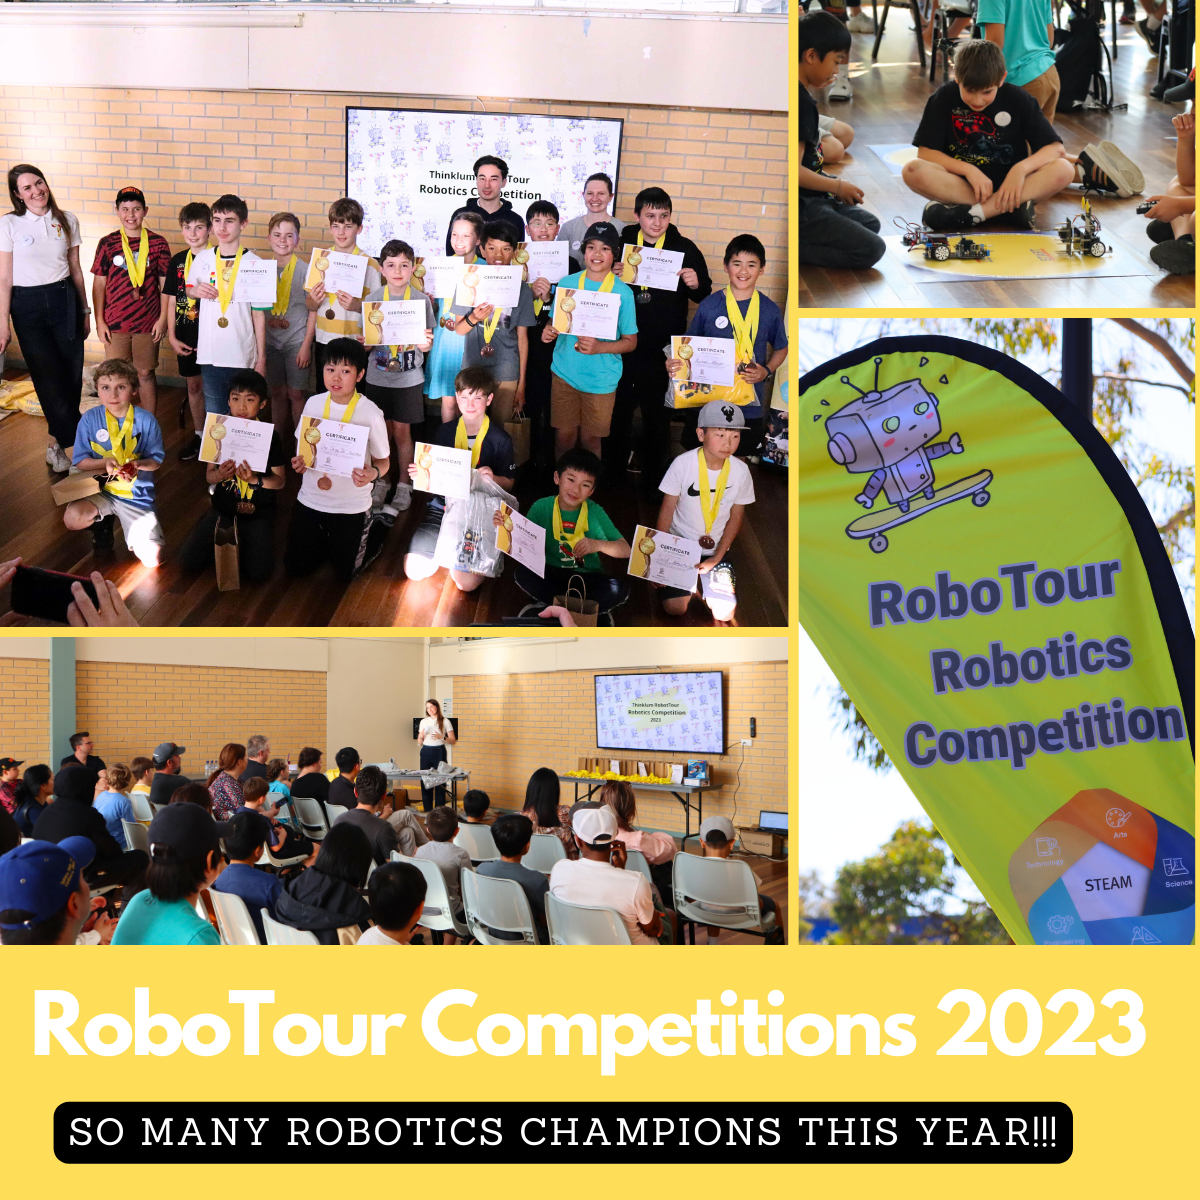 Robotics Classes for Kids in Marrickville  - Thinklum Robotics Club